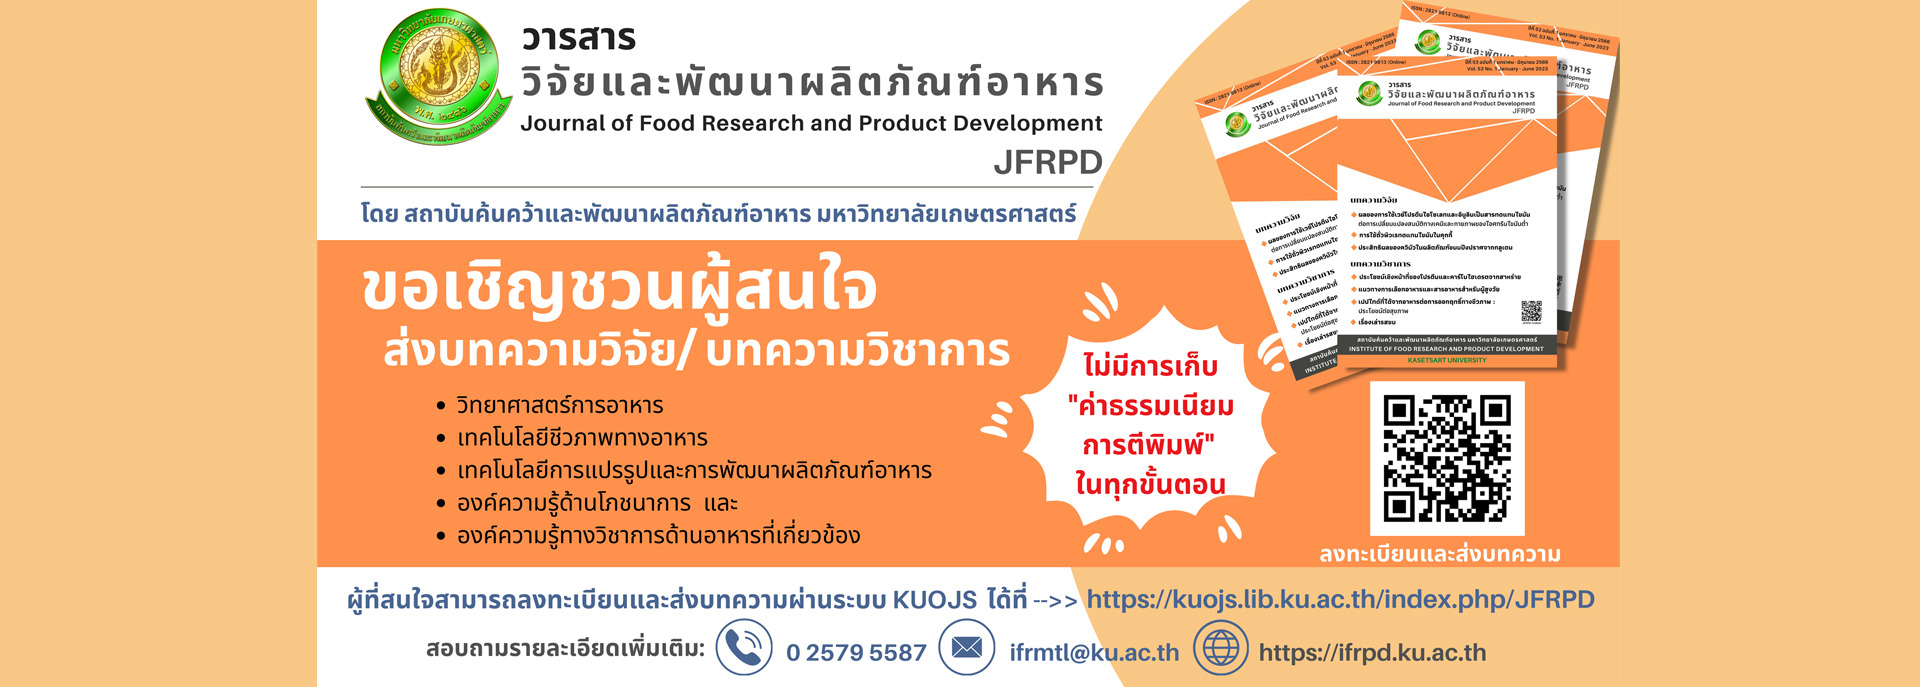 วารสารวิจัยและพัฒนาผลิตภัณฑ์อาหาร Journal of Food Research and Product Development, JFRPD